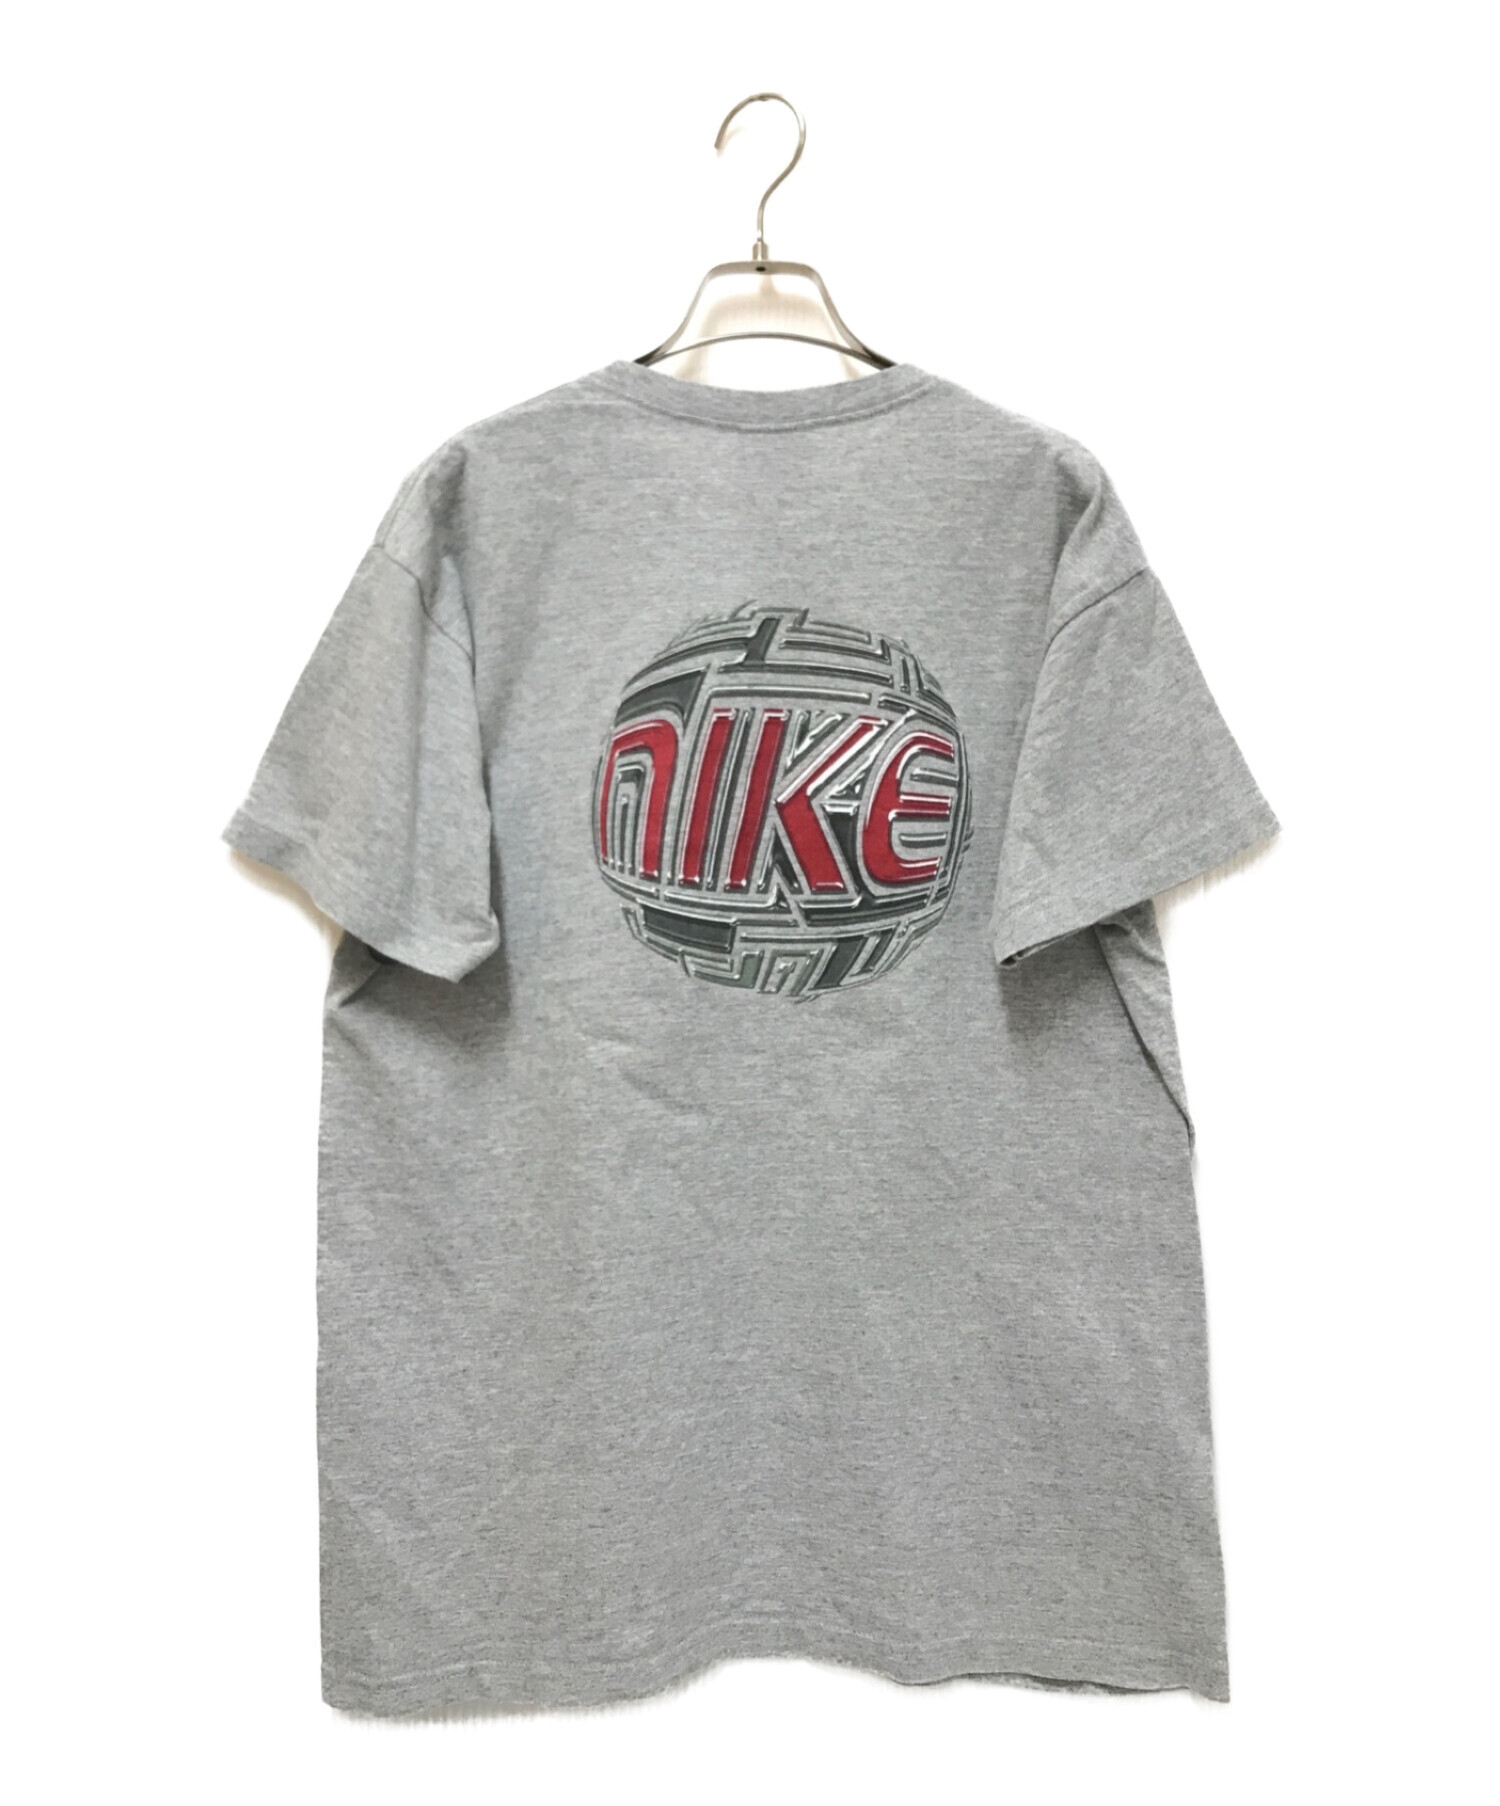 新品 未使用 90's NIKE ナイキ Tシャツ バスケット 米国製 グレーバスケットボール